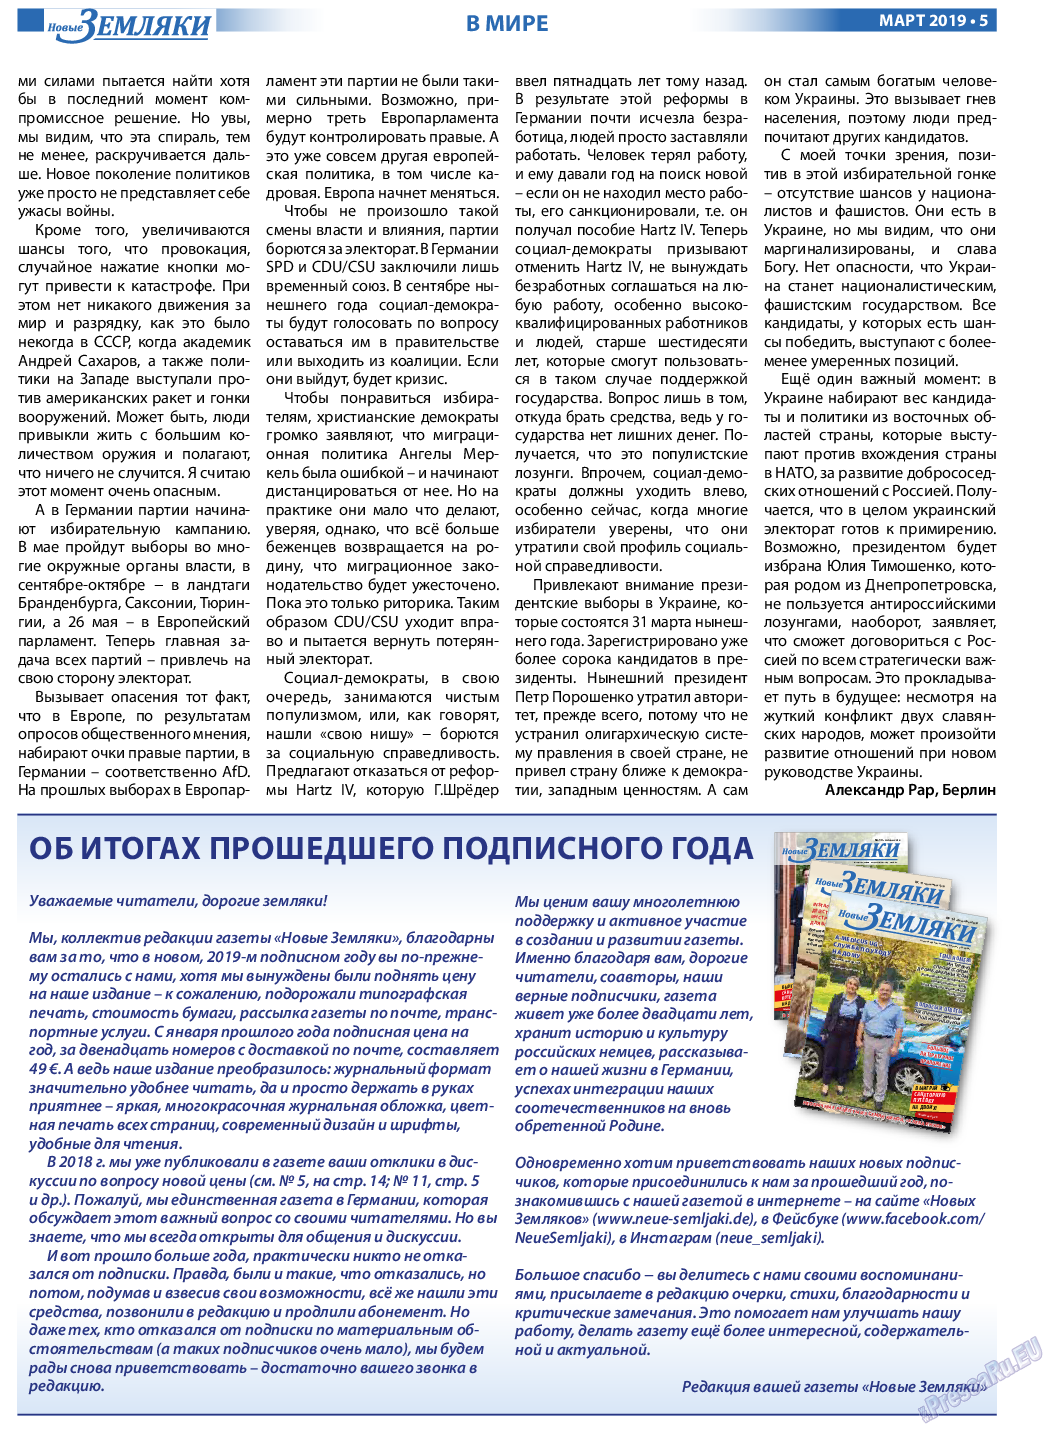 Новые Земляки (газета). 2019 год, номер 3, стр. 5